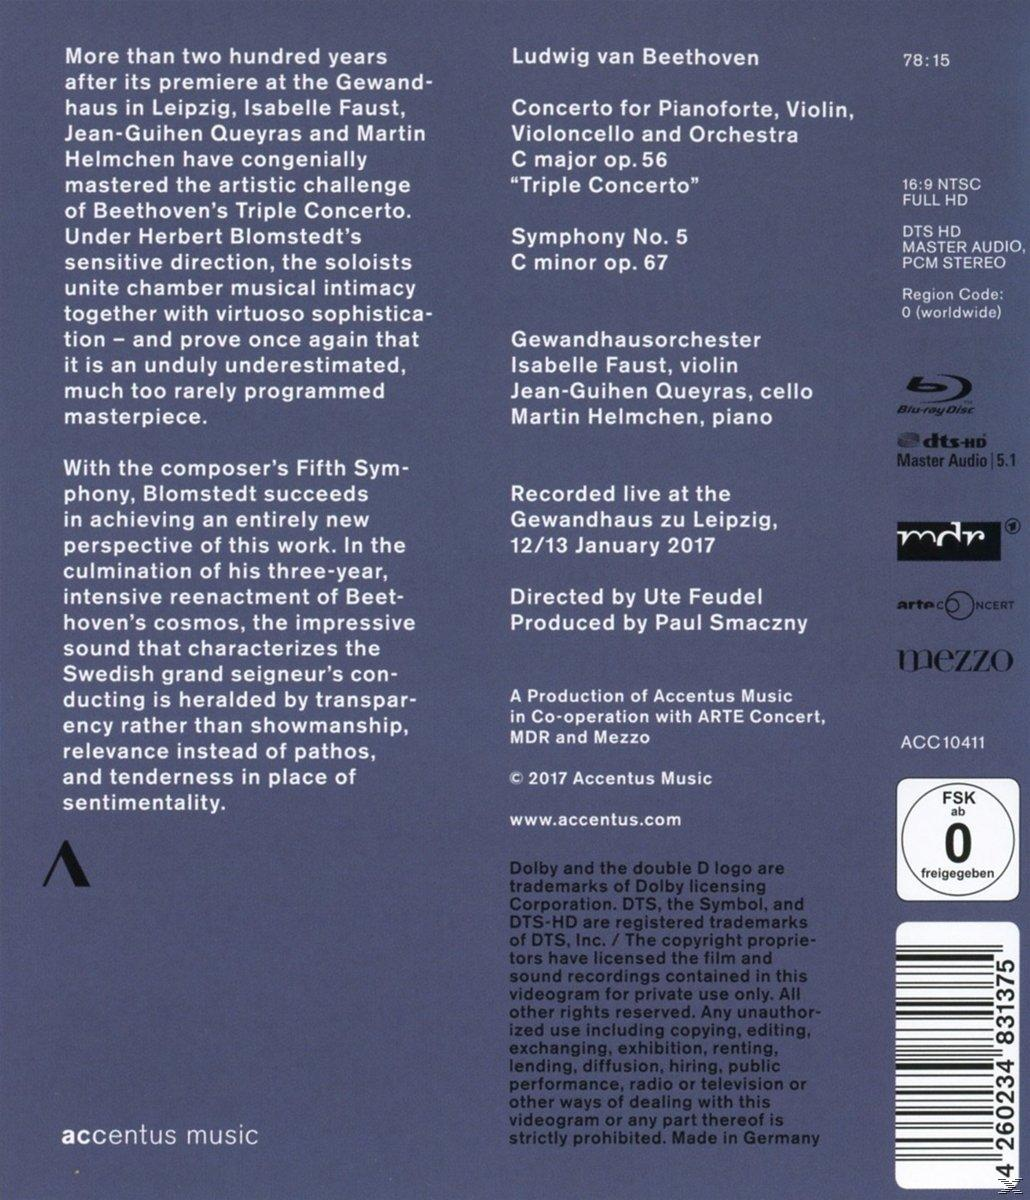 Tripelkonzert/Sinfonie - (Blu-ray) - Gewandhausorchester 5